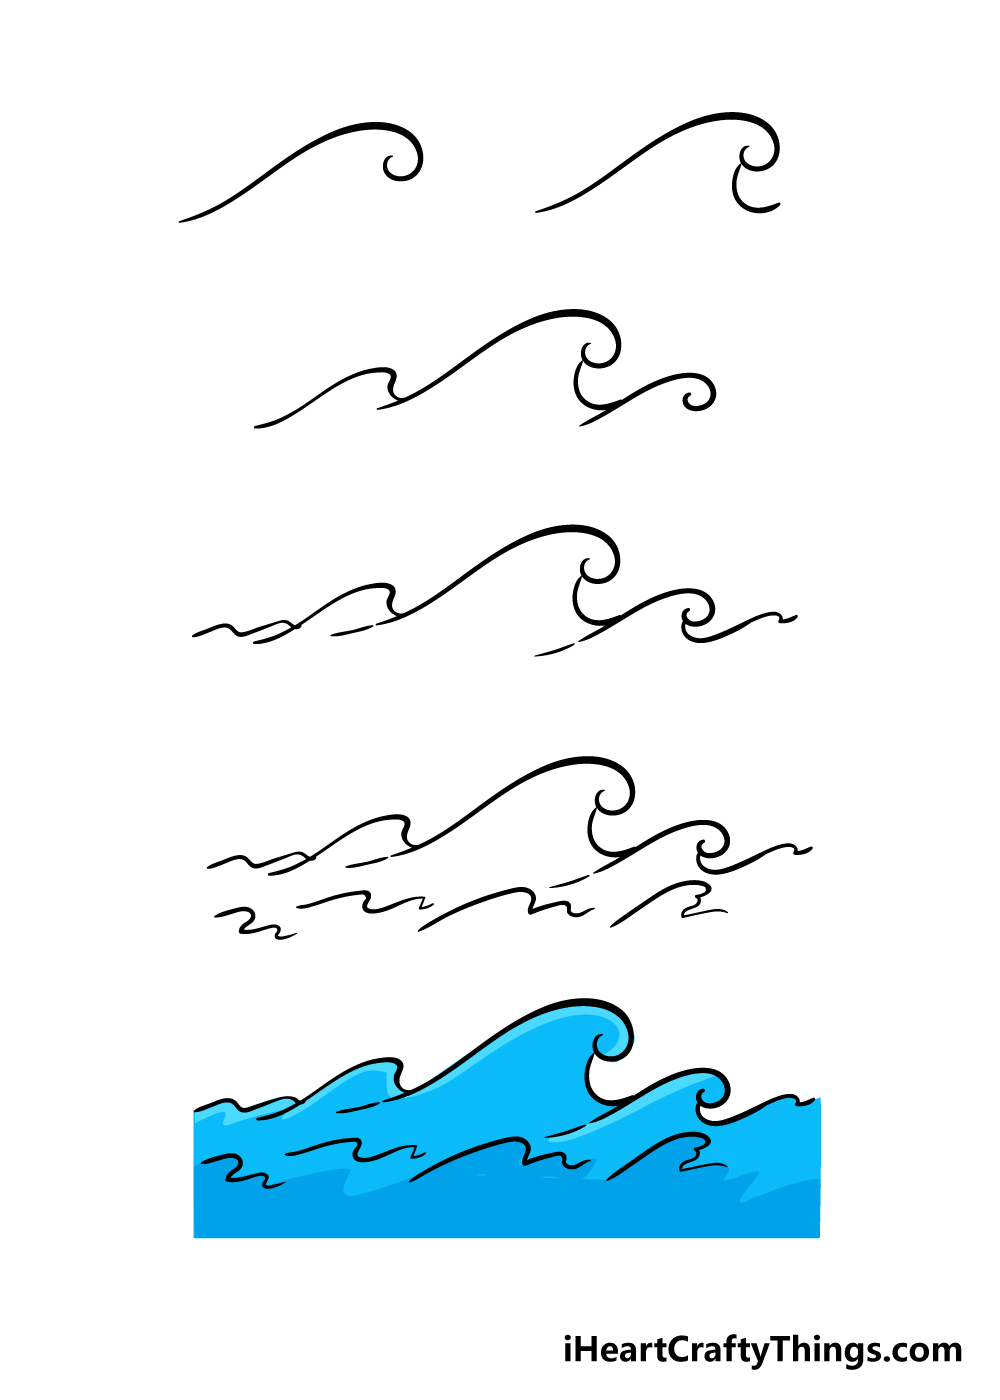 Bí quyết vẽ sóng biển đơn giản cho người mới học vẽ